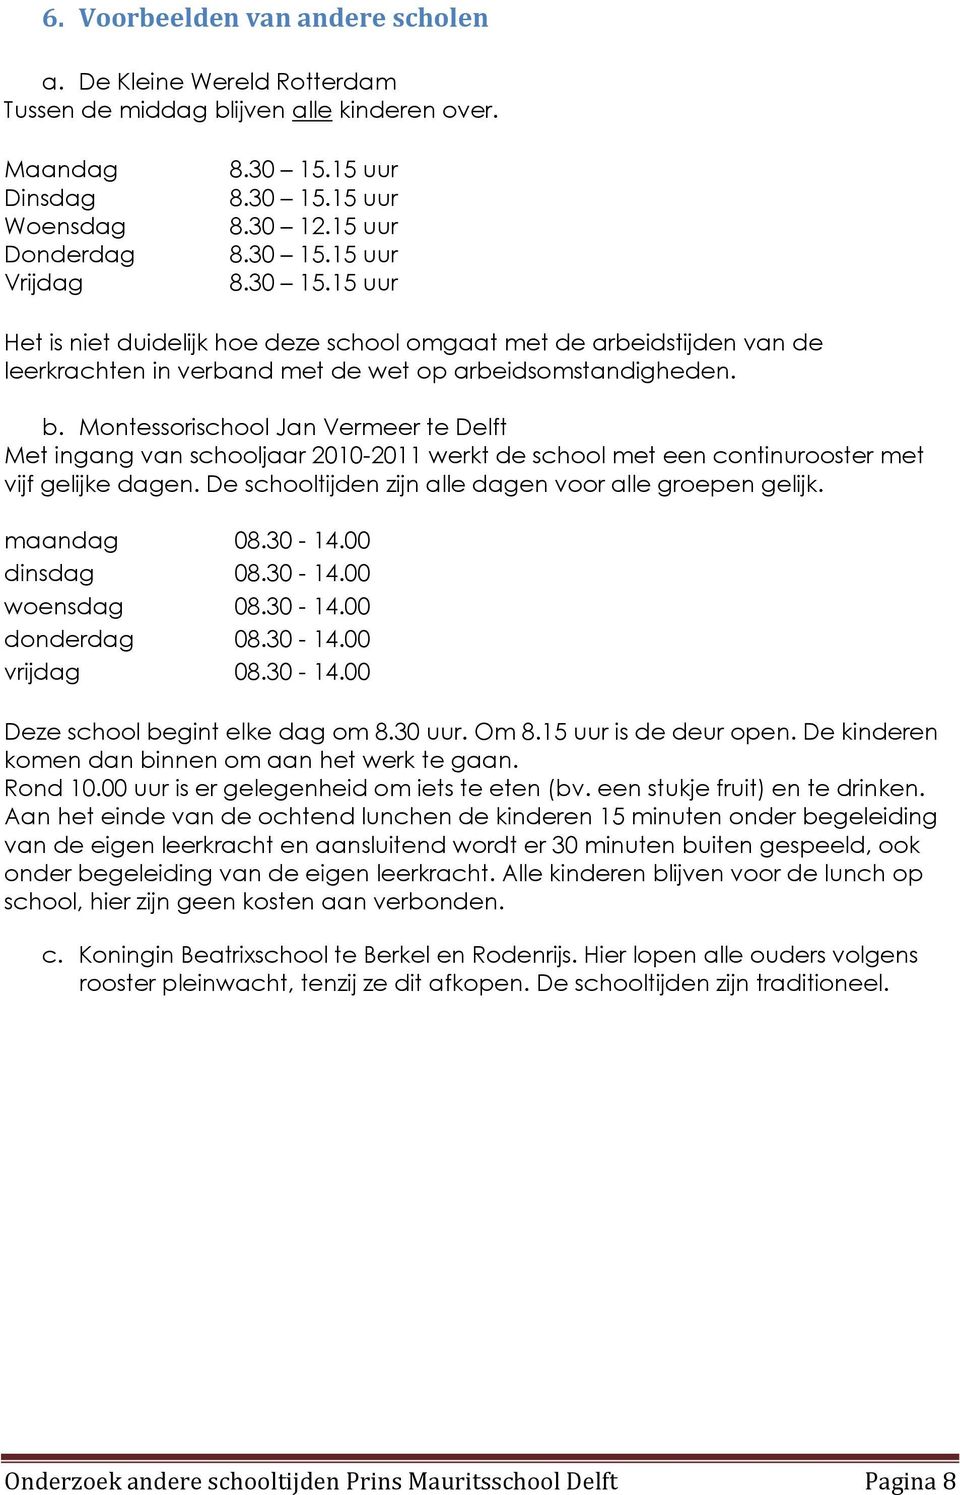 b. Montessorischool Jan Vermeer te Delft Met ingang van schooljaar 2010-2011 werkt de school met een continurooster met vijf gelijke dagen. De schooltijden zijn alle dagen voor alle groepen gelijk.